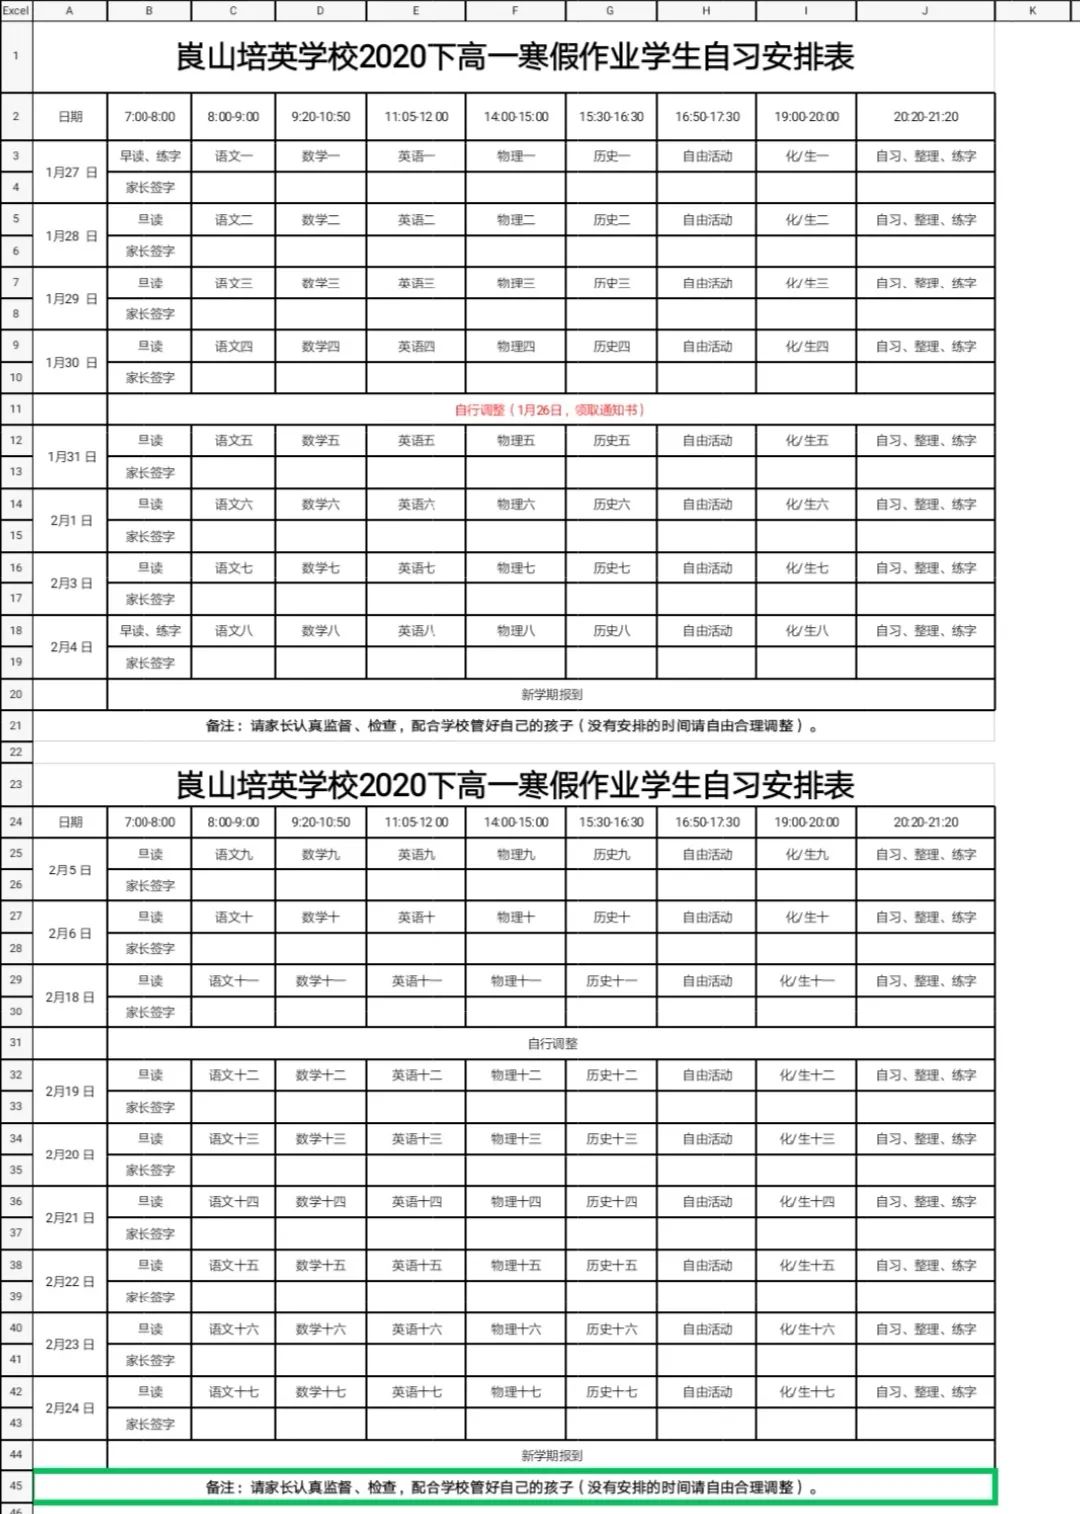 铭志教育崀山培英学校高一年级2020年寒假作业计划表